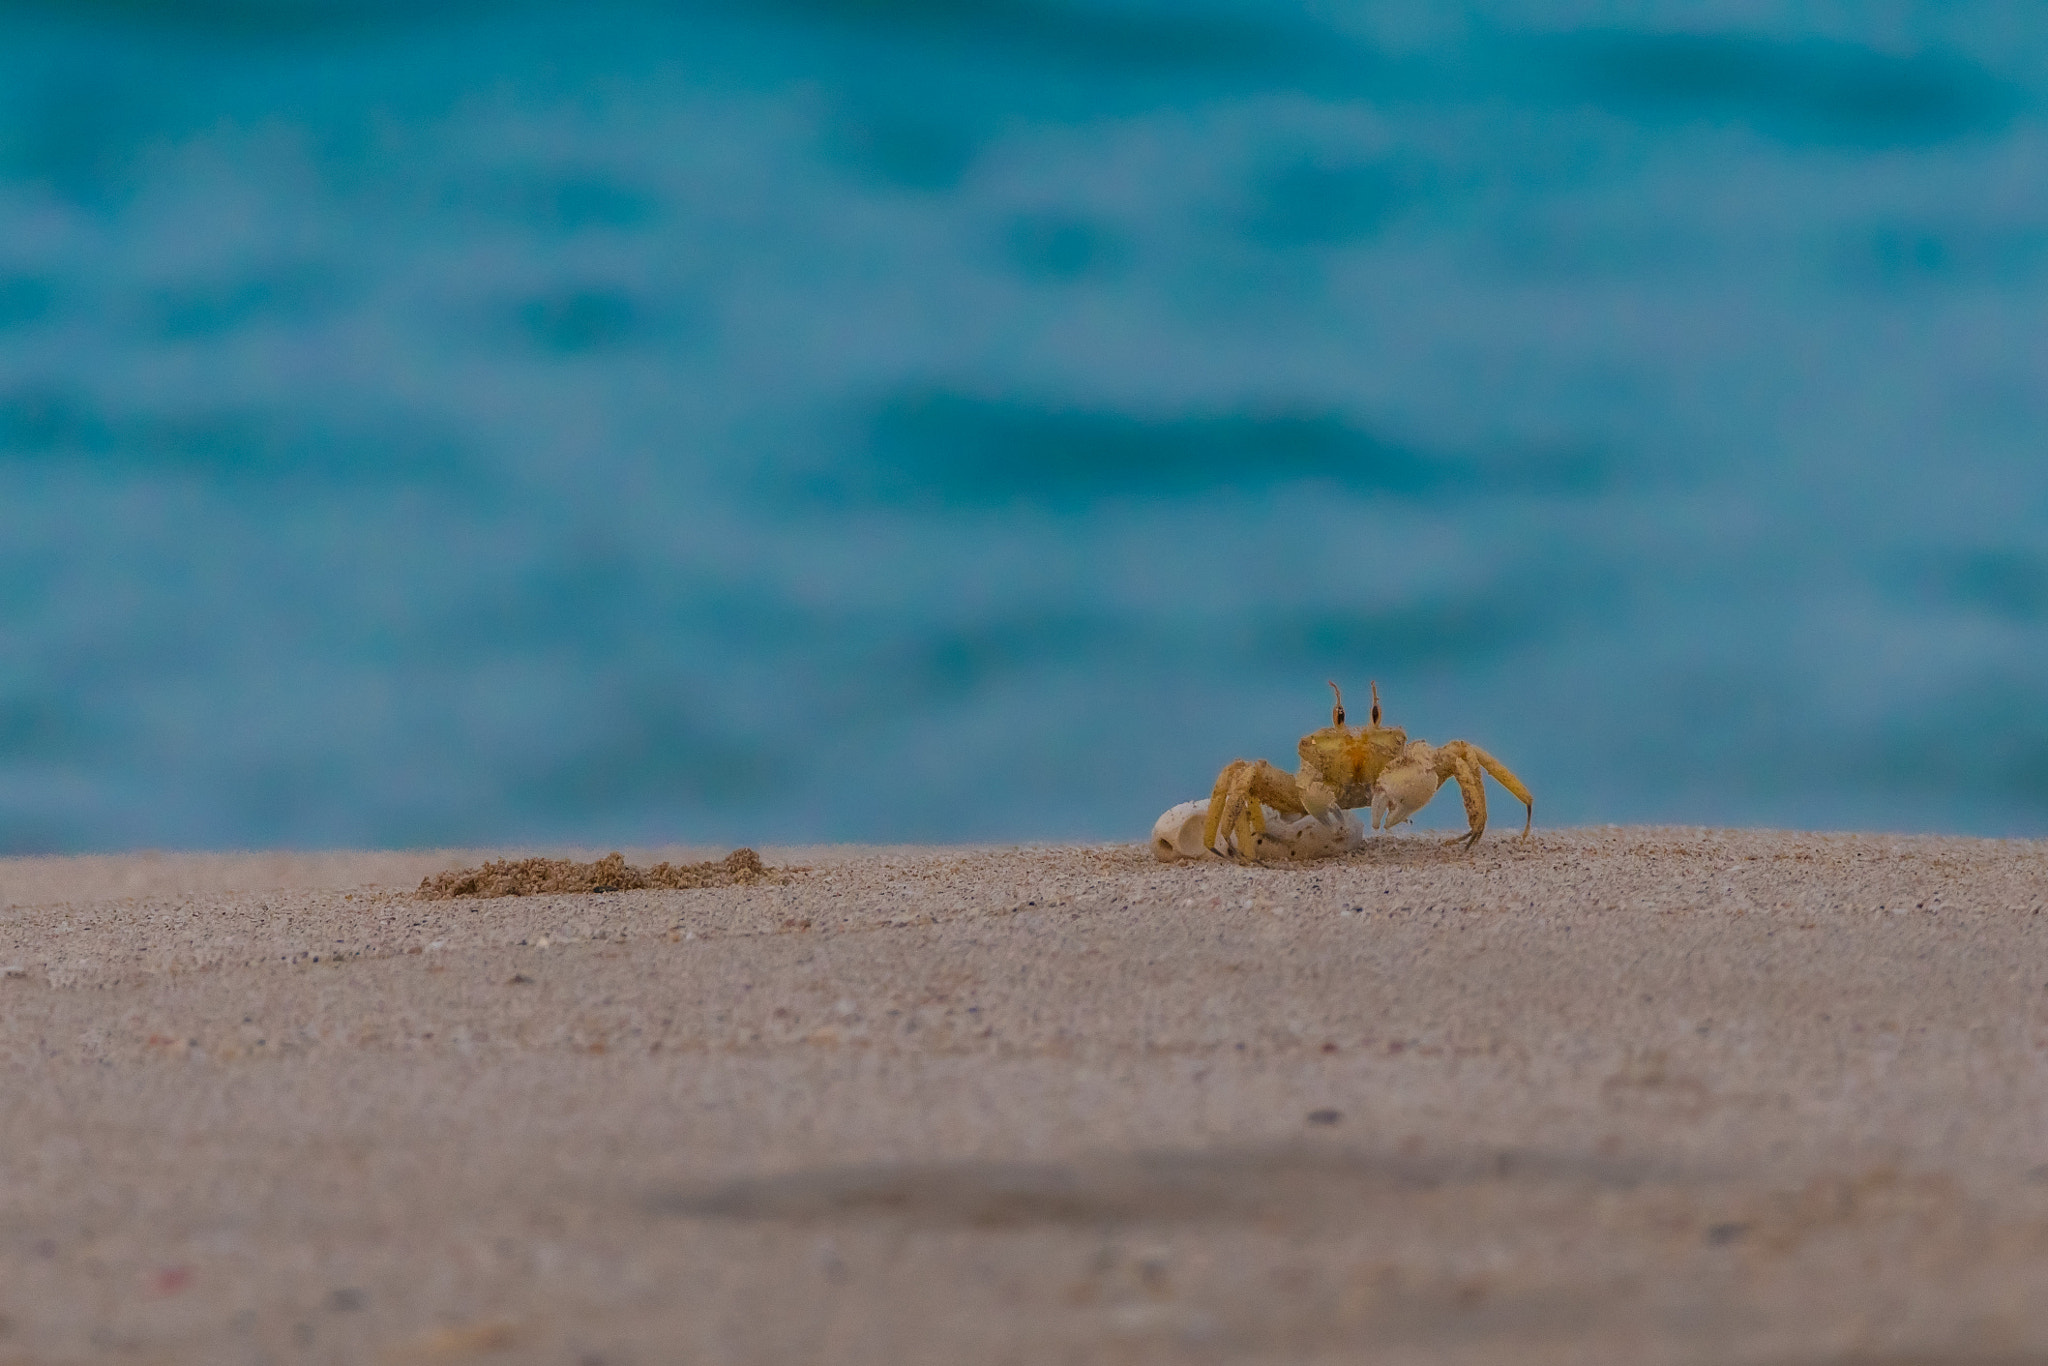 Posing Crab